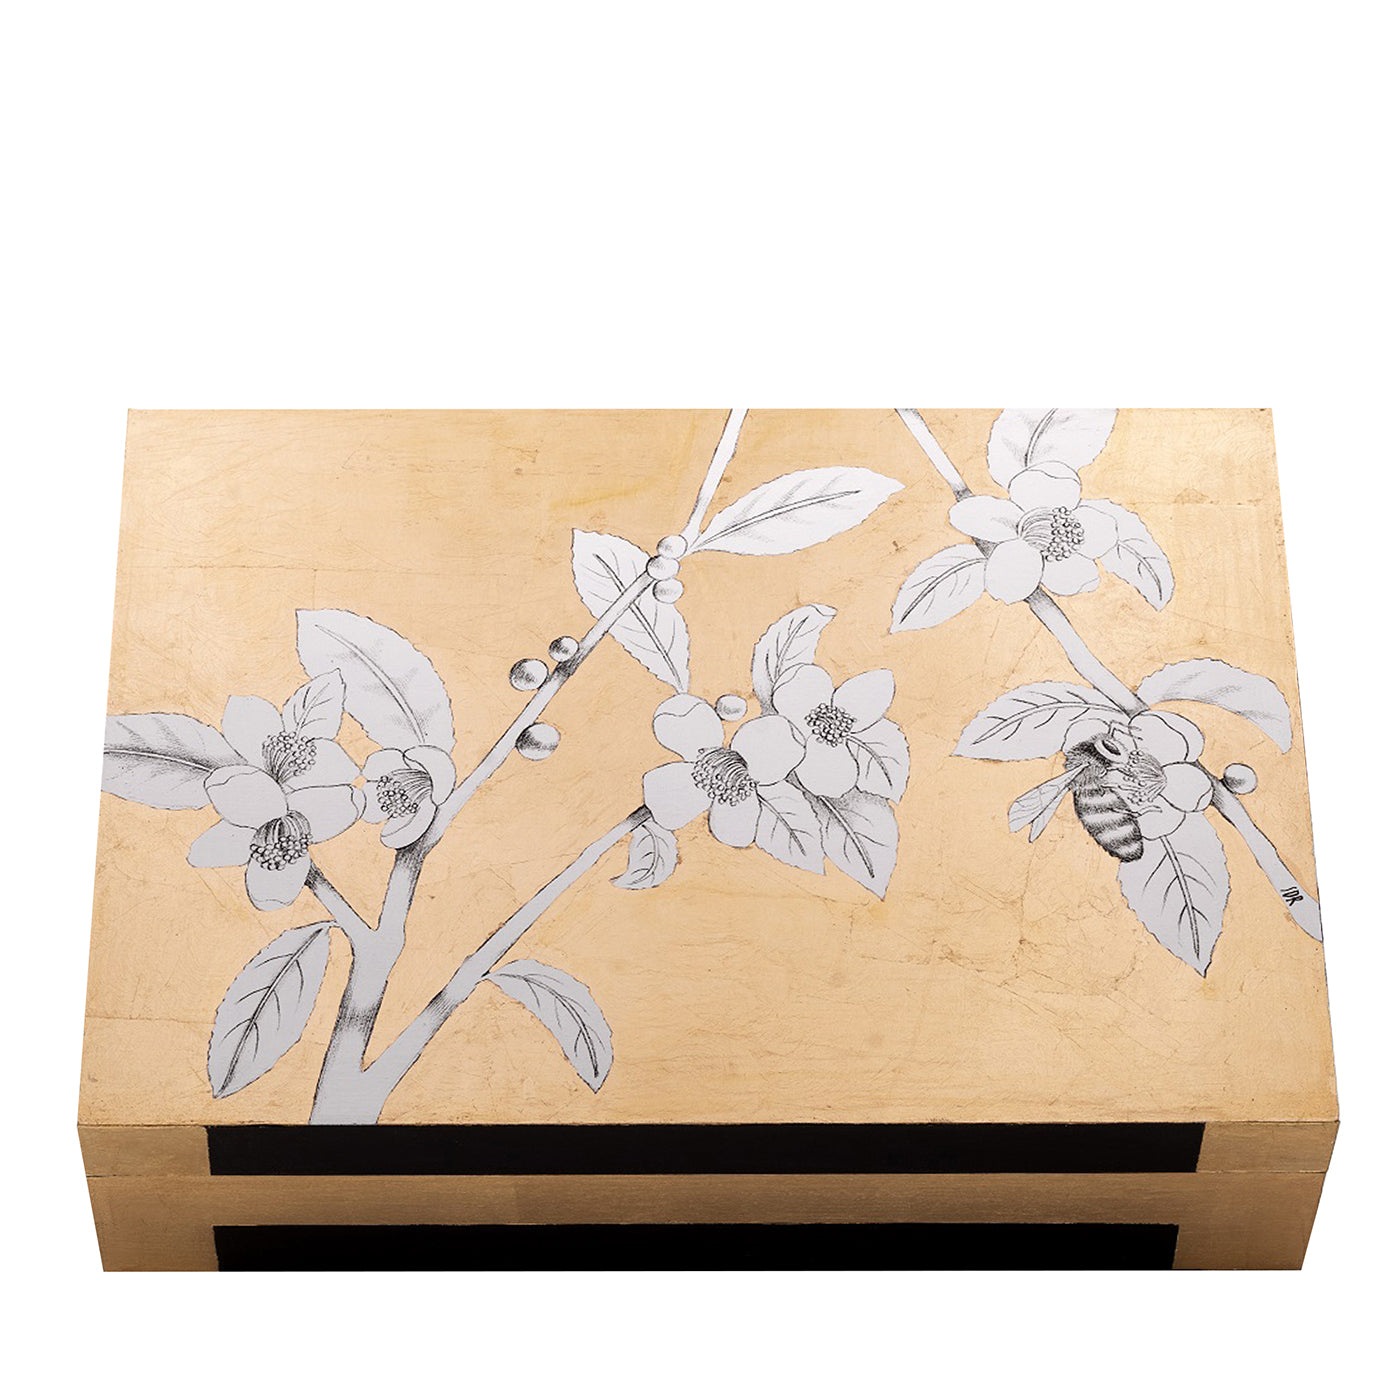 Casarialto Atelier Biene in einer goldenen Sky-Box von Stefania Dei Rossi - Hauptansicht